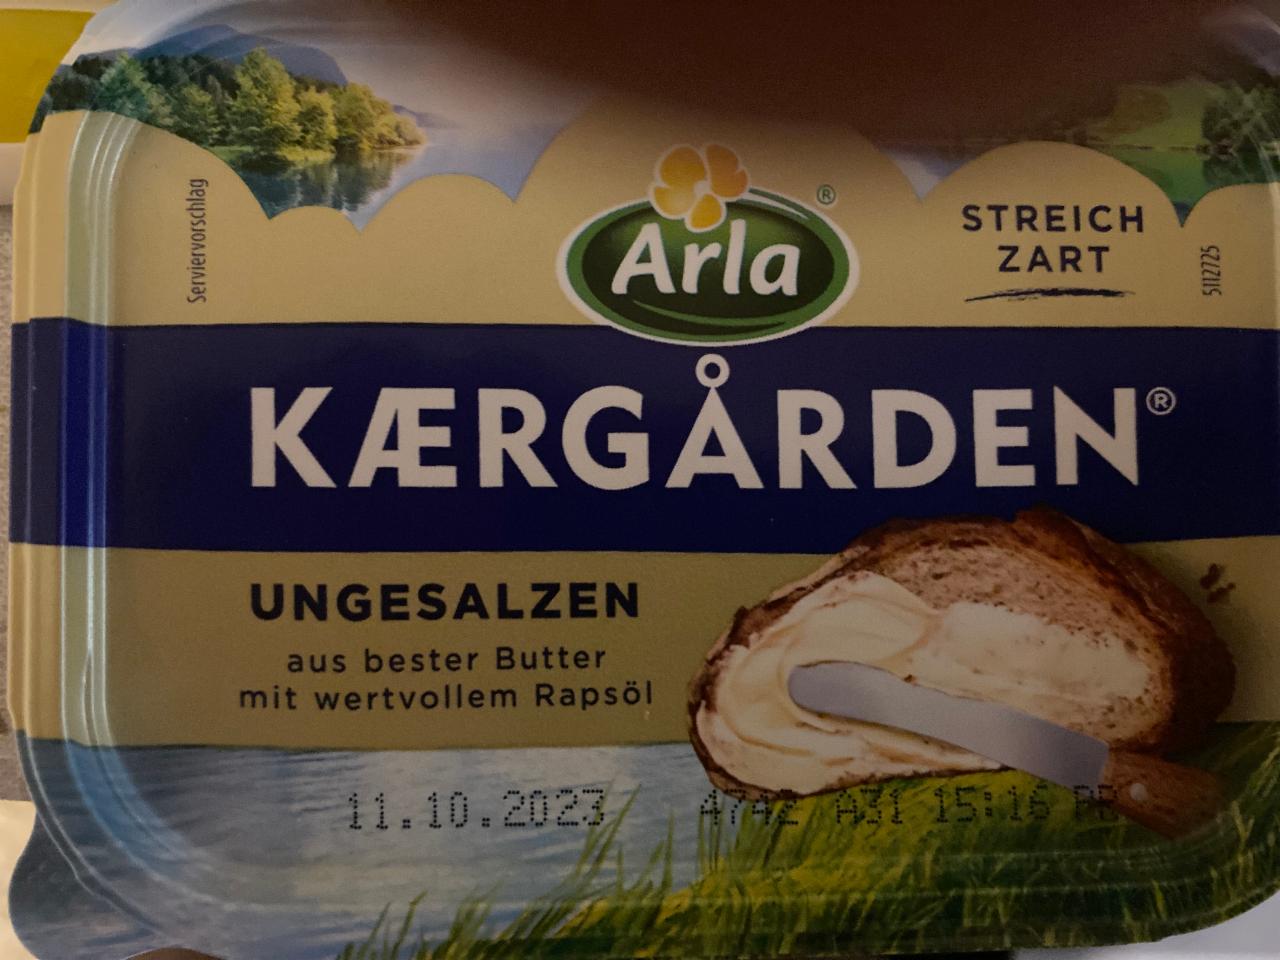 kJ Arla hodnoty a nutriční ungesalzen - Kærgården kalorie,